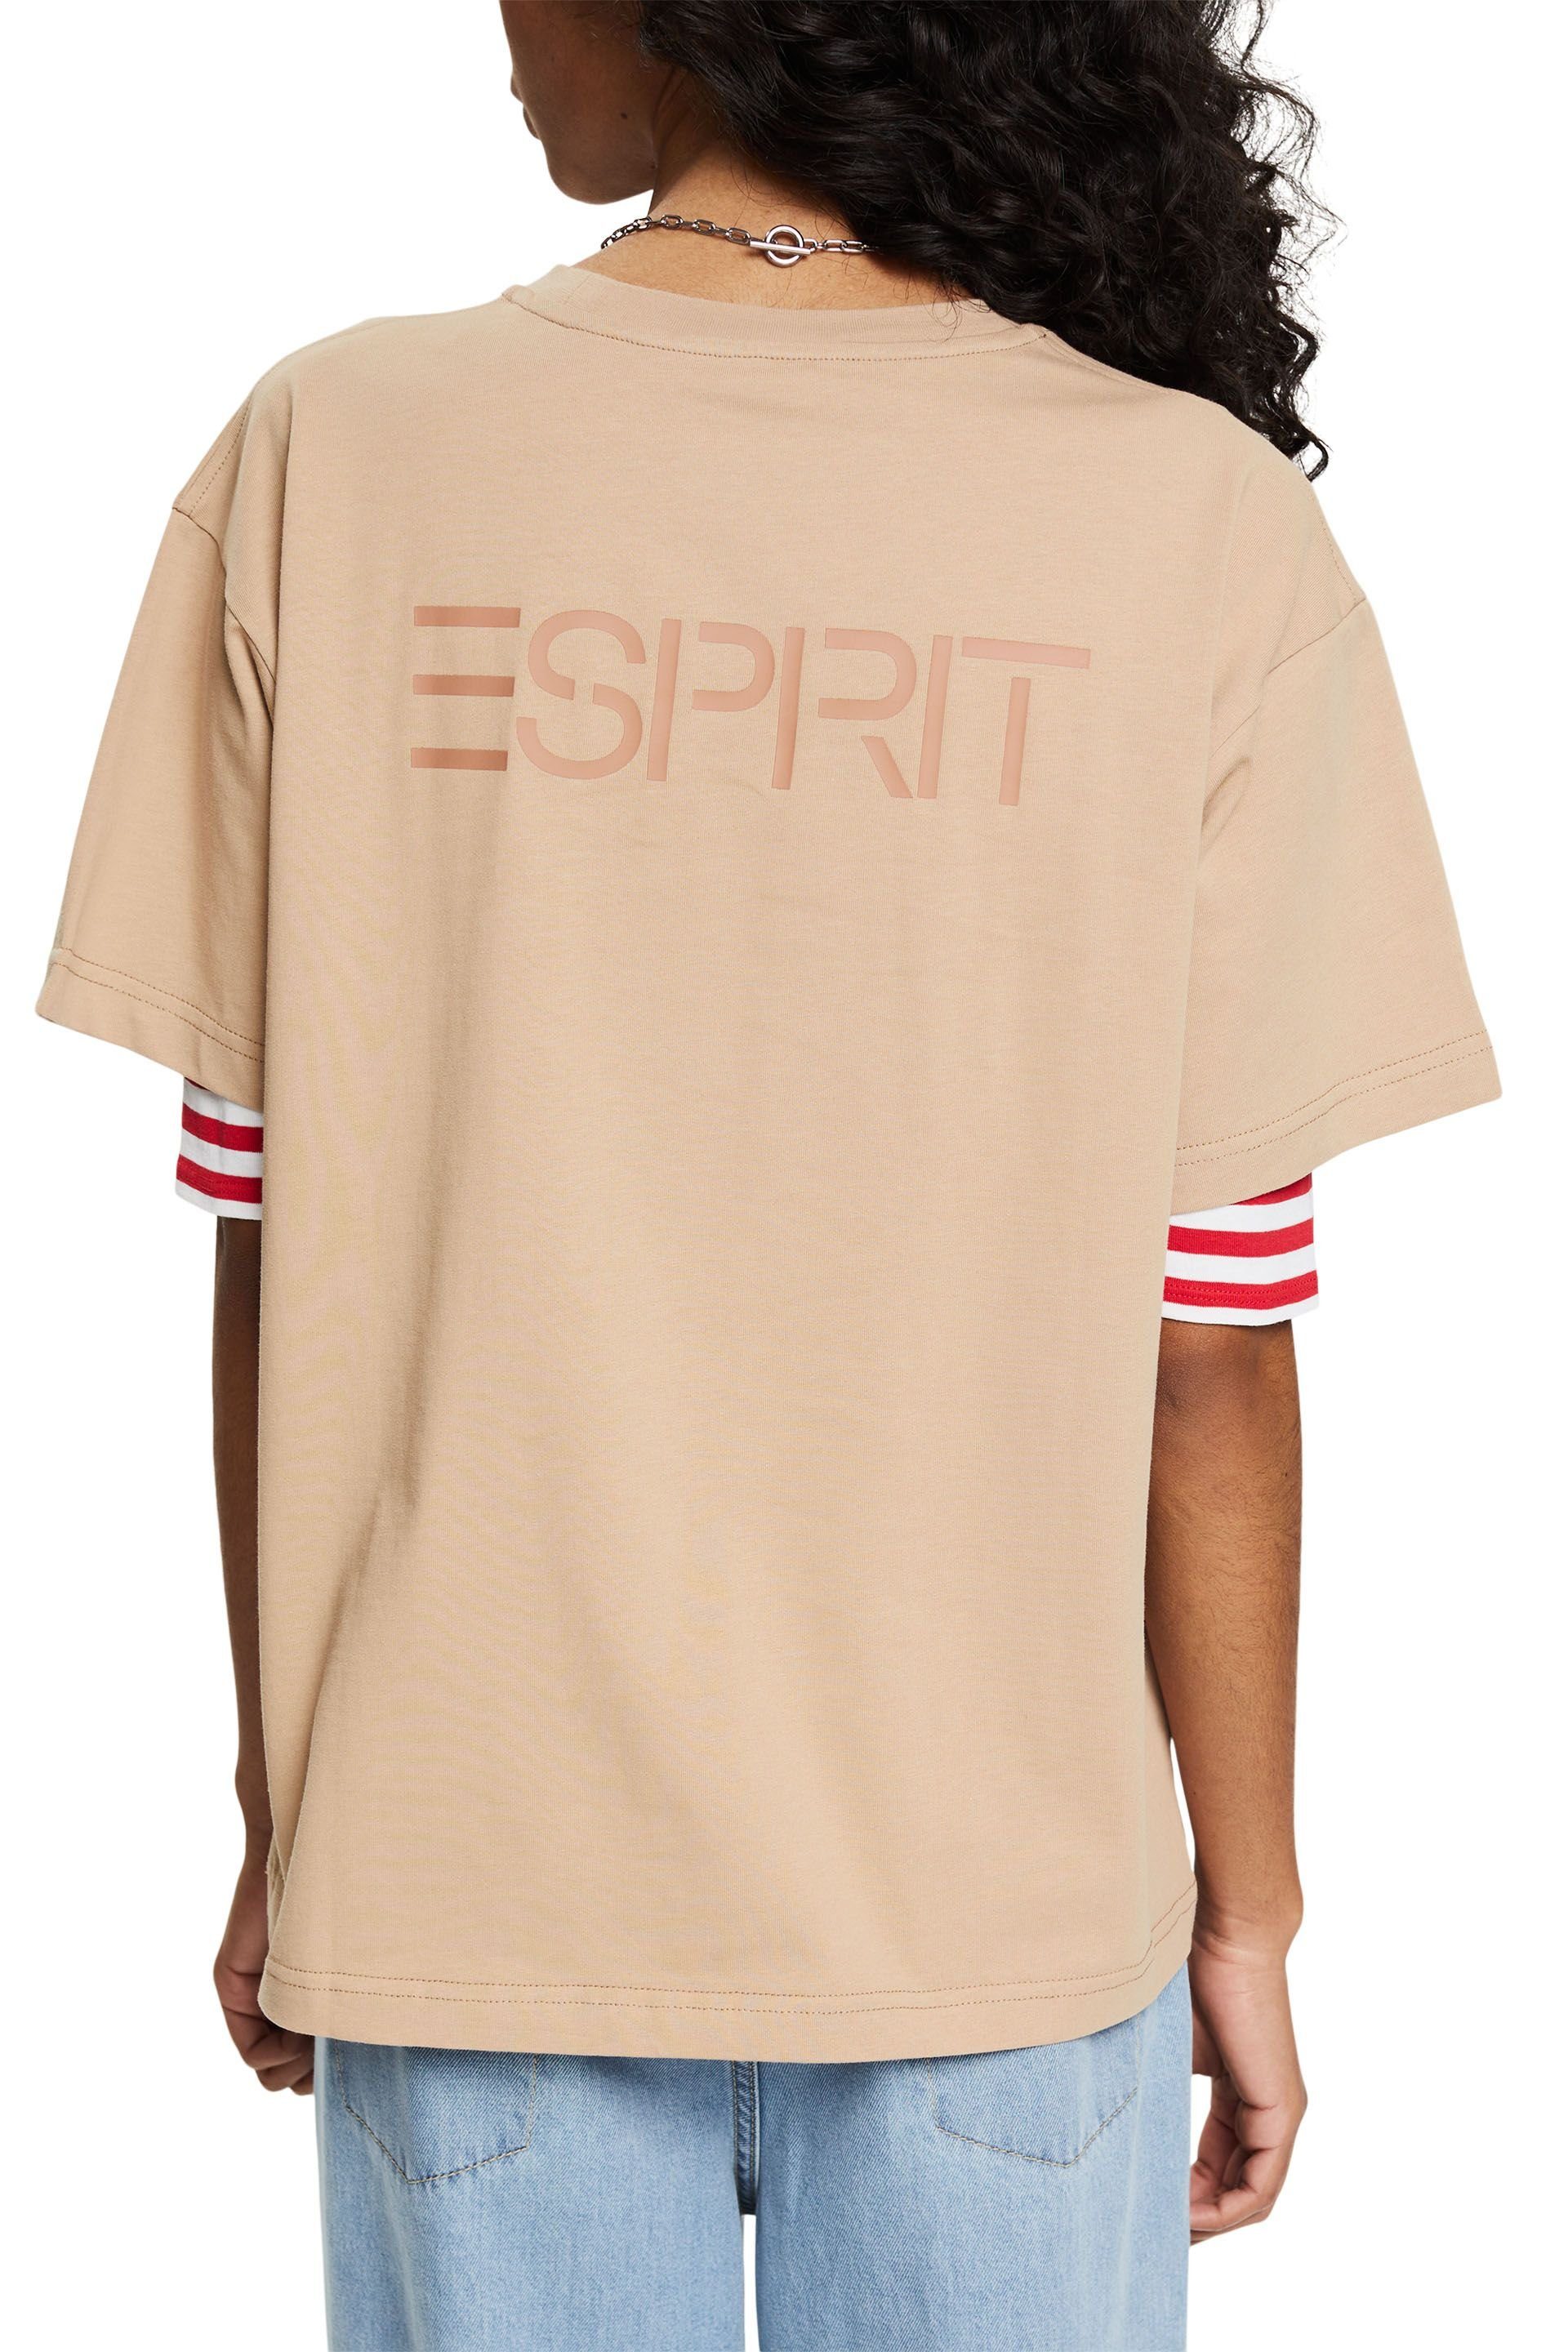 Esprit khaki T-Shirt beige